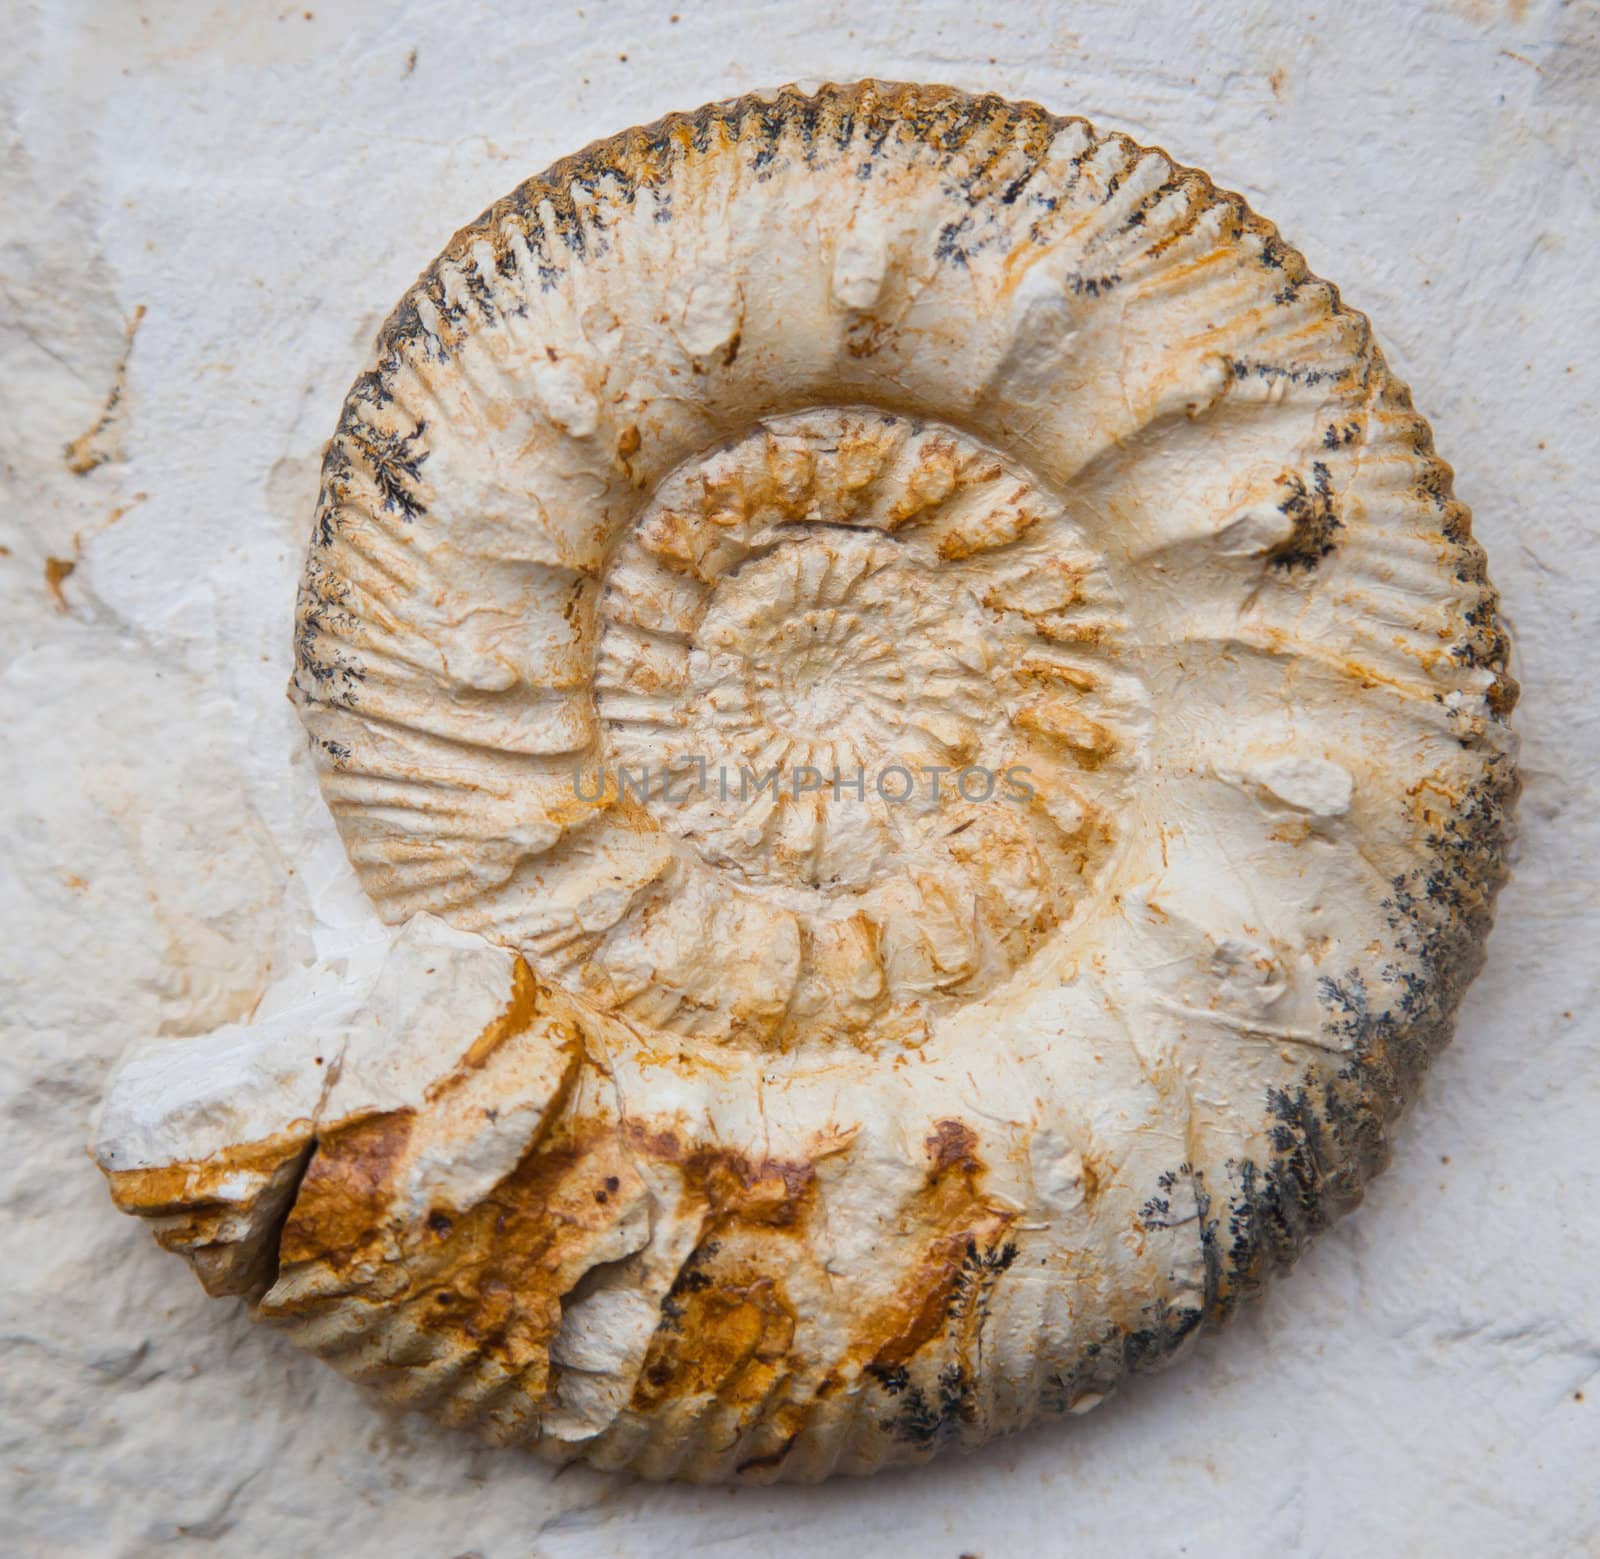 fossilised ammonoids (Ammonoidea)